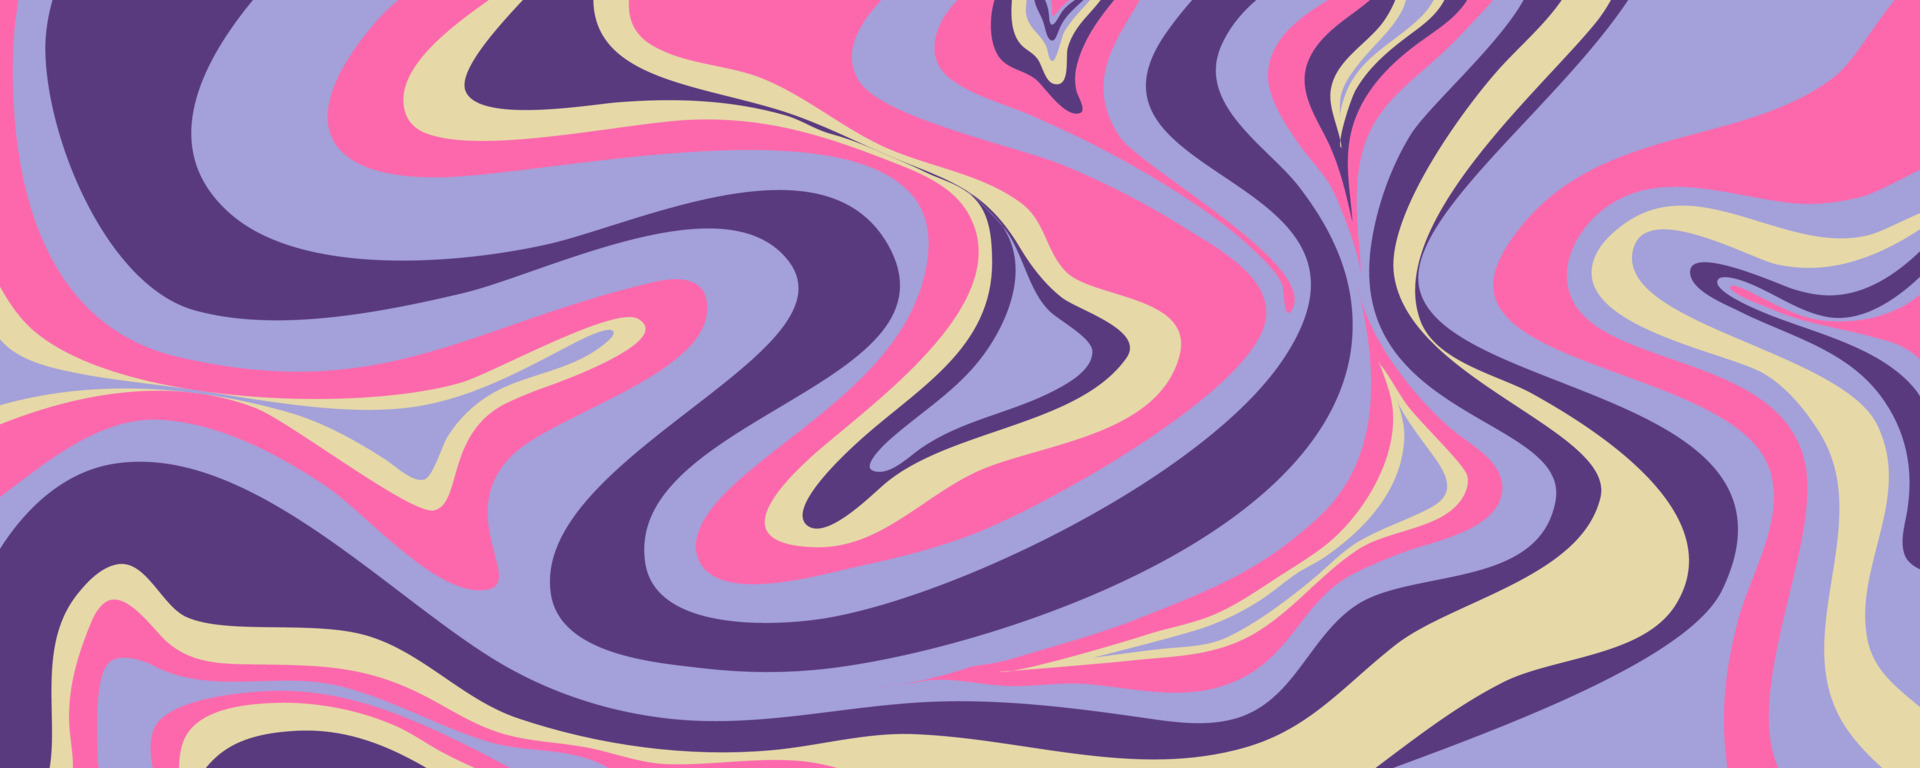 Một hình nền sóng Y2k ấn tượng sẽ tạo cảm giác rung động dành cho ai yêu thích sự độc đáo và táo bạo. Các sắc màu tươi sáng, các đường nét mượt mà sẽ khiến bạn thích thú. Hãy xem hình nền sóng Y2k này, sẽ đem đến cảm giác mới mẻ cho phong cách của bạn.